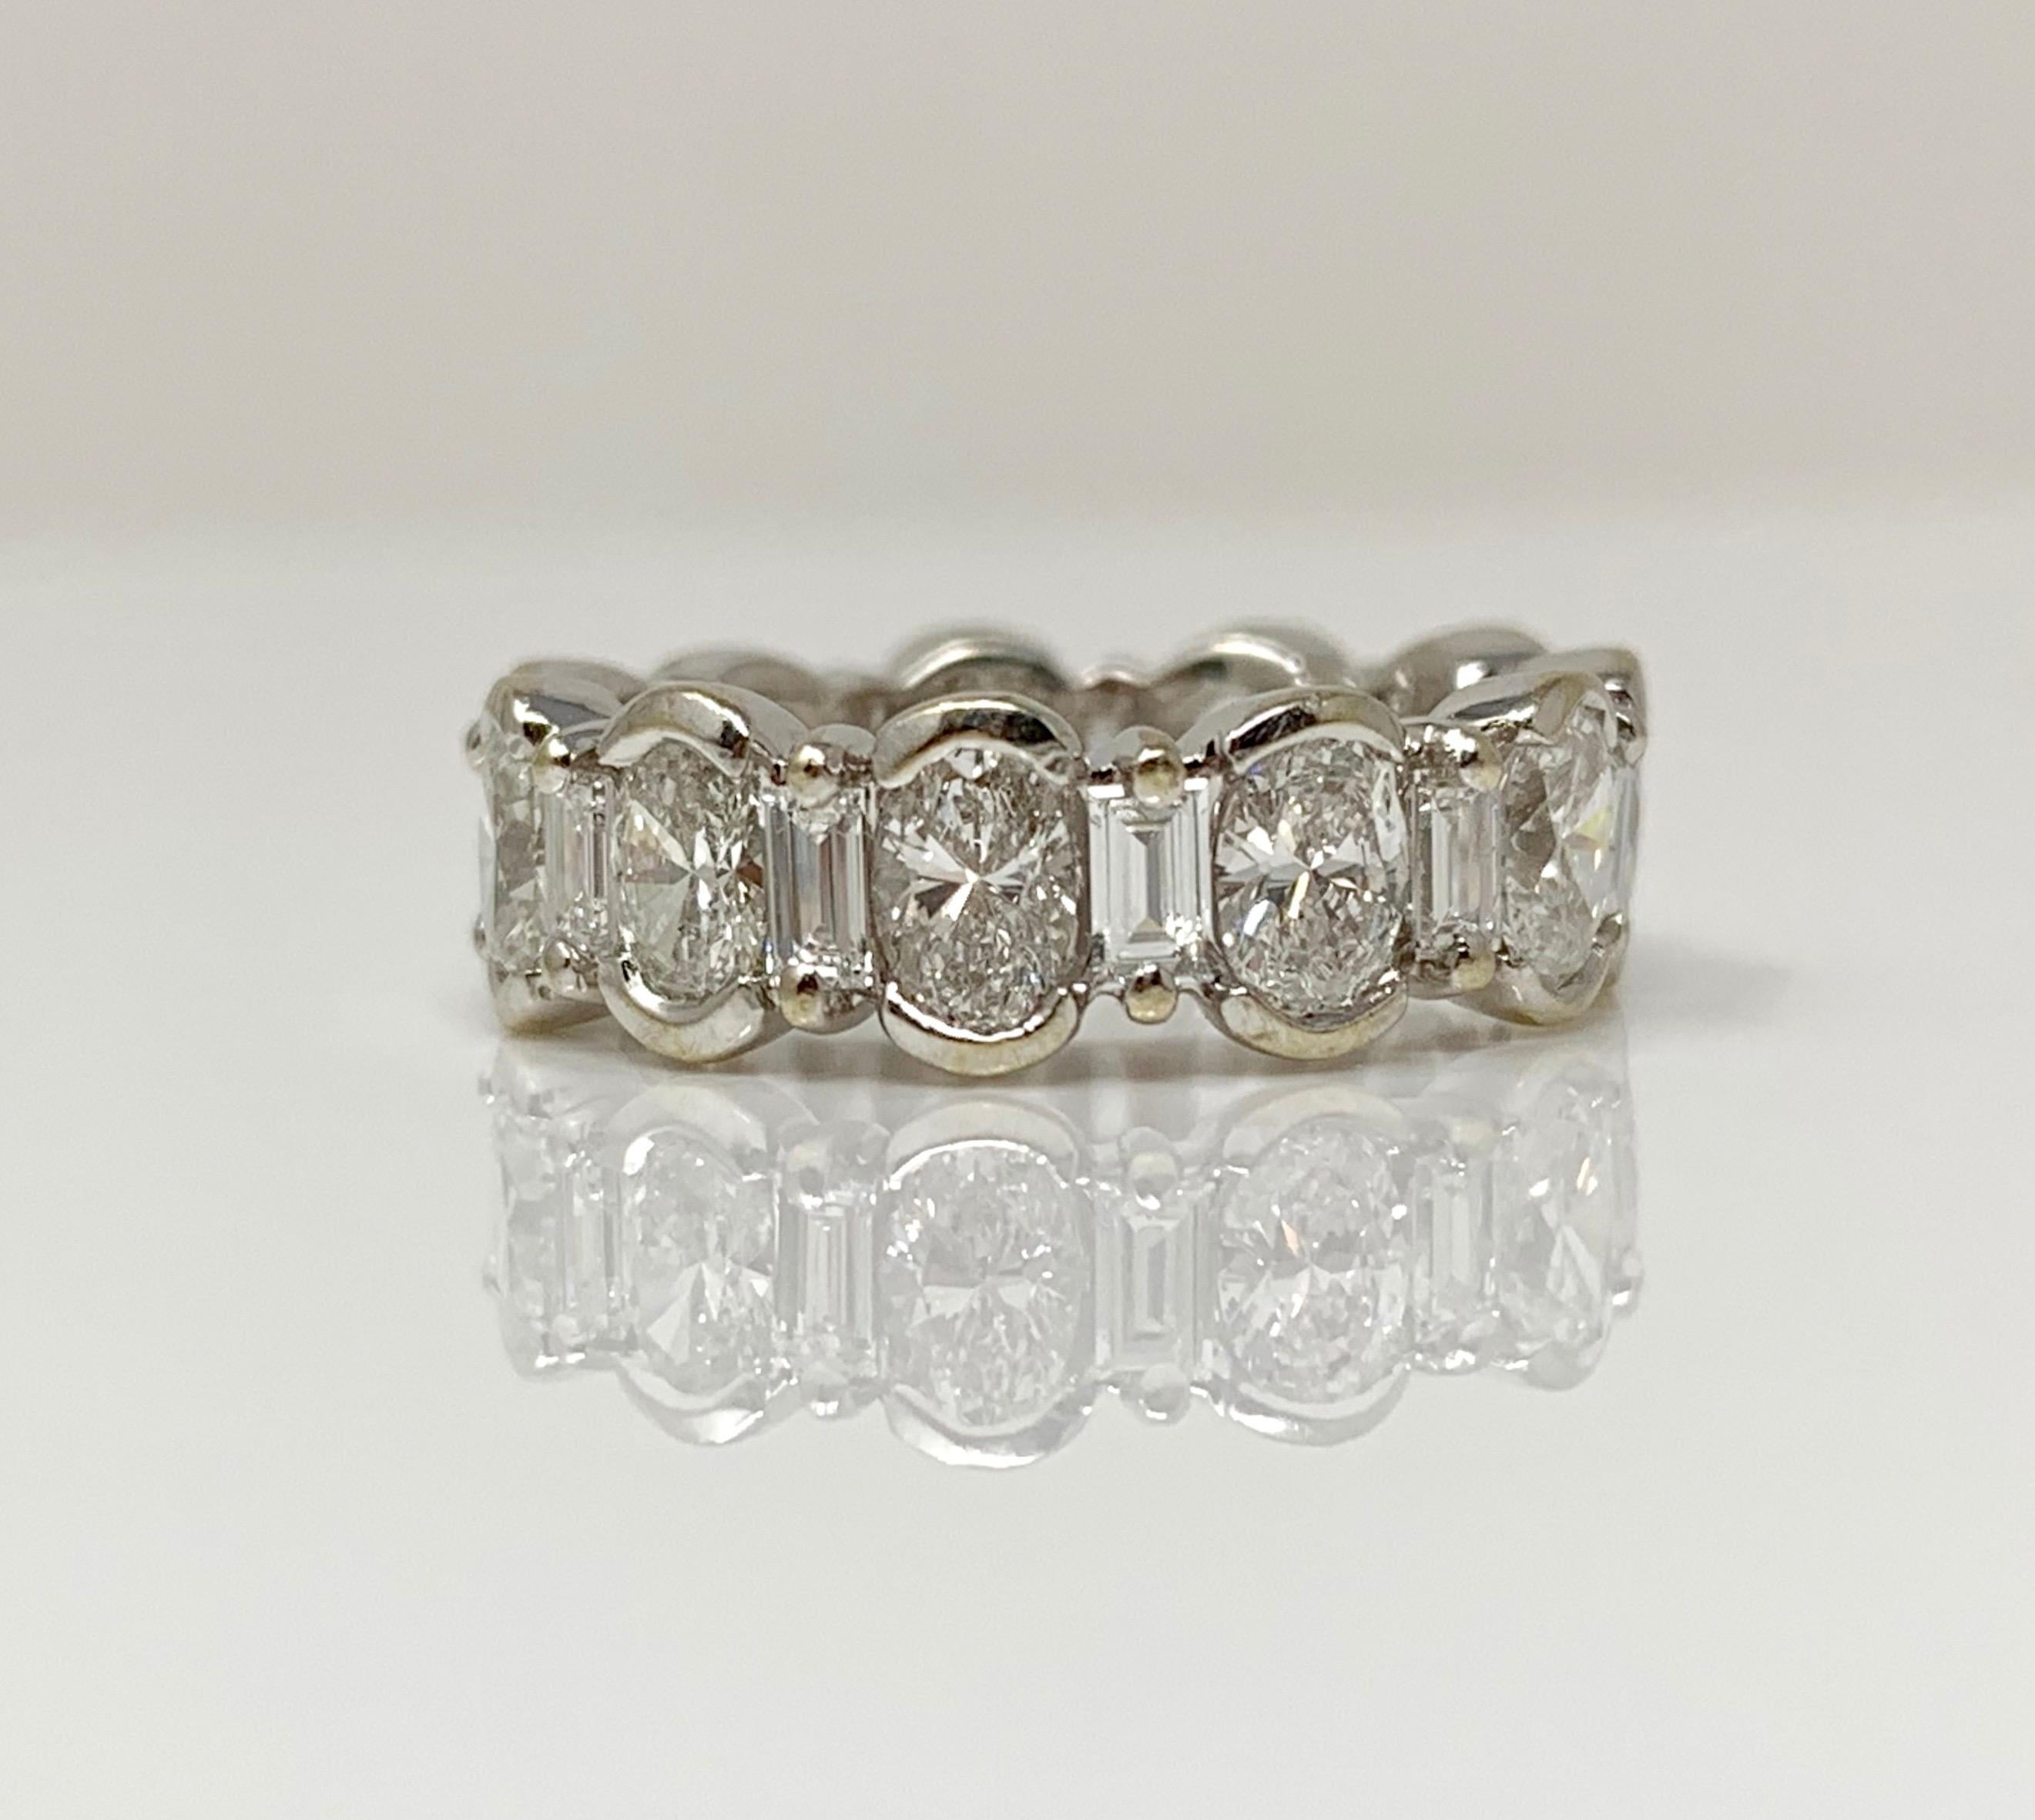 Cette adorable alliance est fabriquée à la main et conçue par Moguldiam Inc. 
Poids total du diamant : Diamant ovale brillant (3 carats) + baguette (1 carat) = 4 carats (couleur H et pureté VS2)
Métal : or blanc 14 K 
Taille de l'anneau : 4 3/4 

